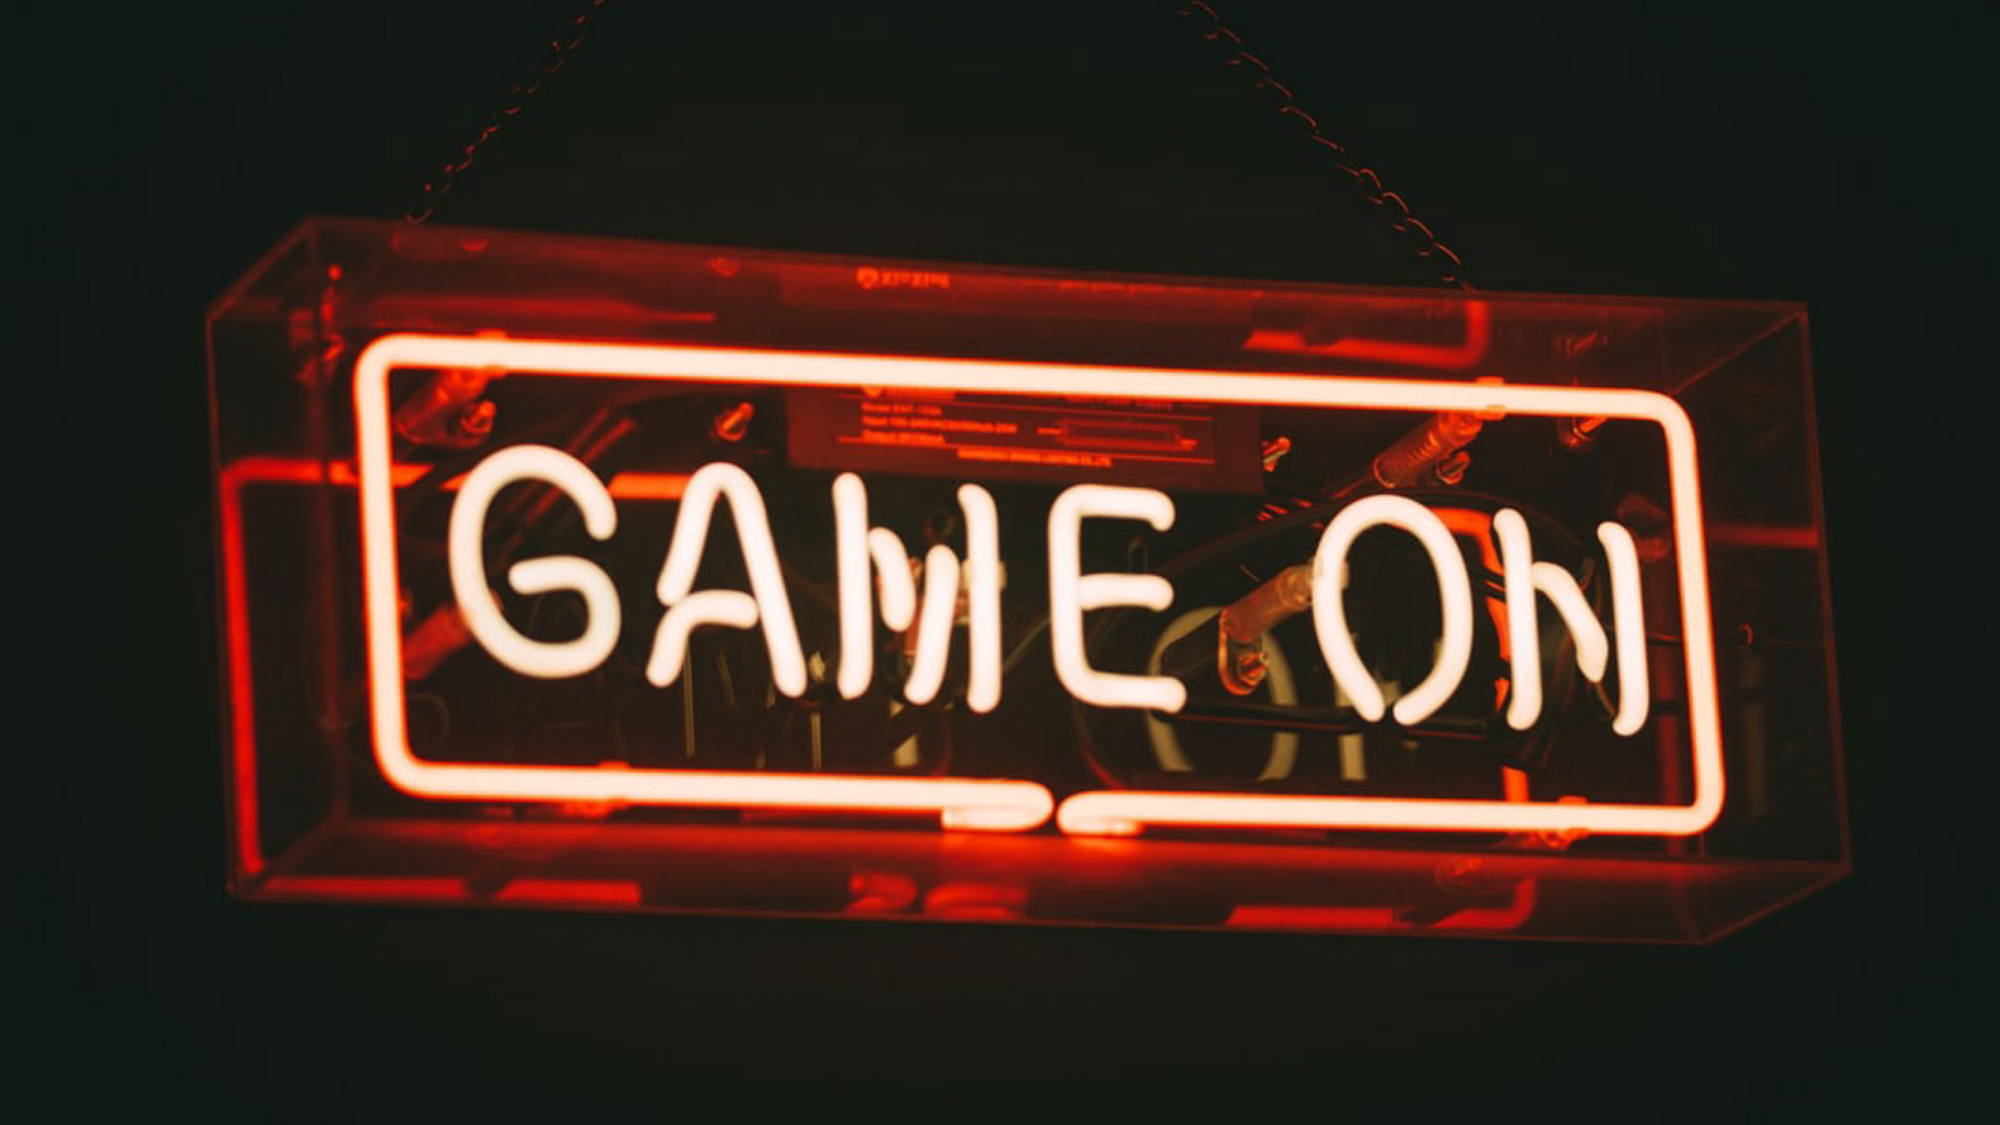 Letrero de neón que dice "Game on"